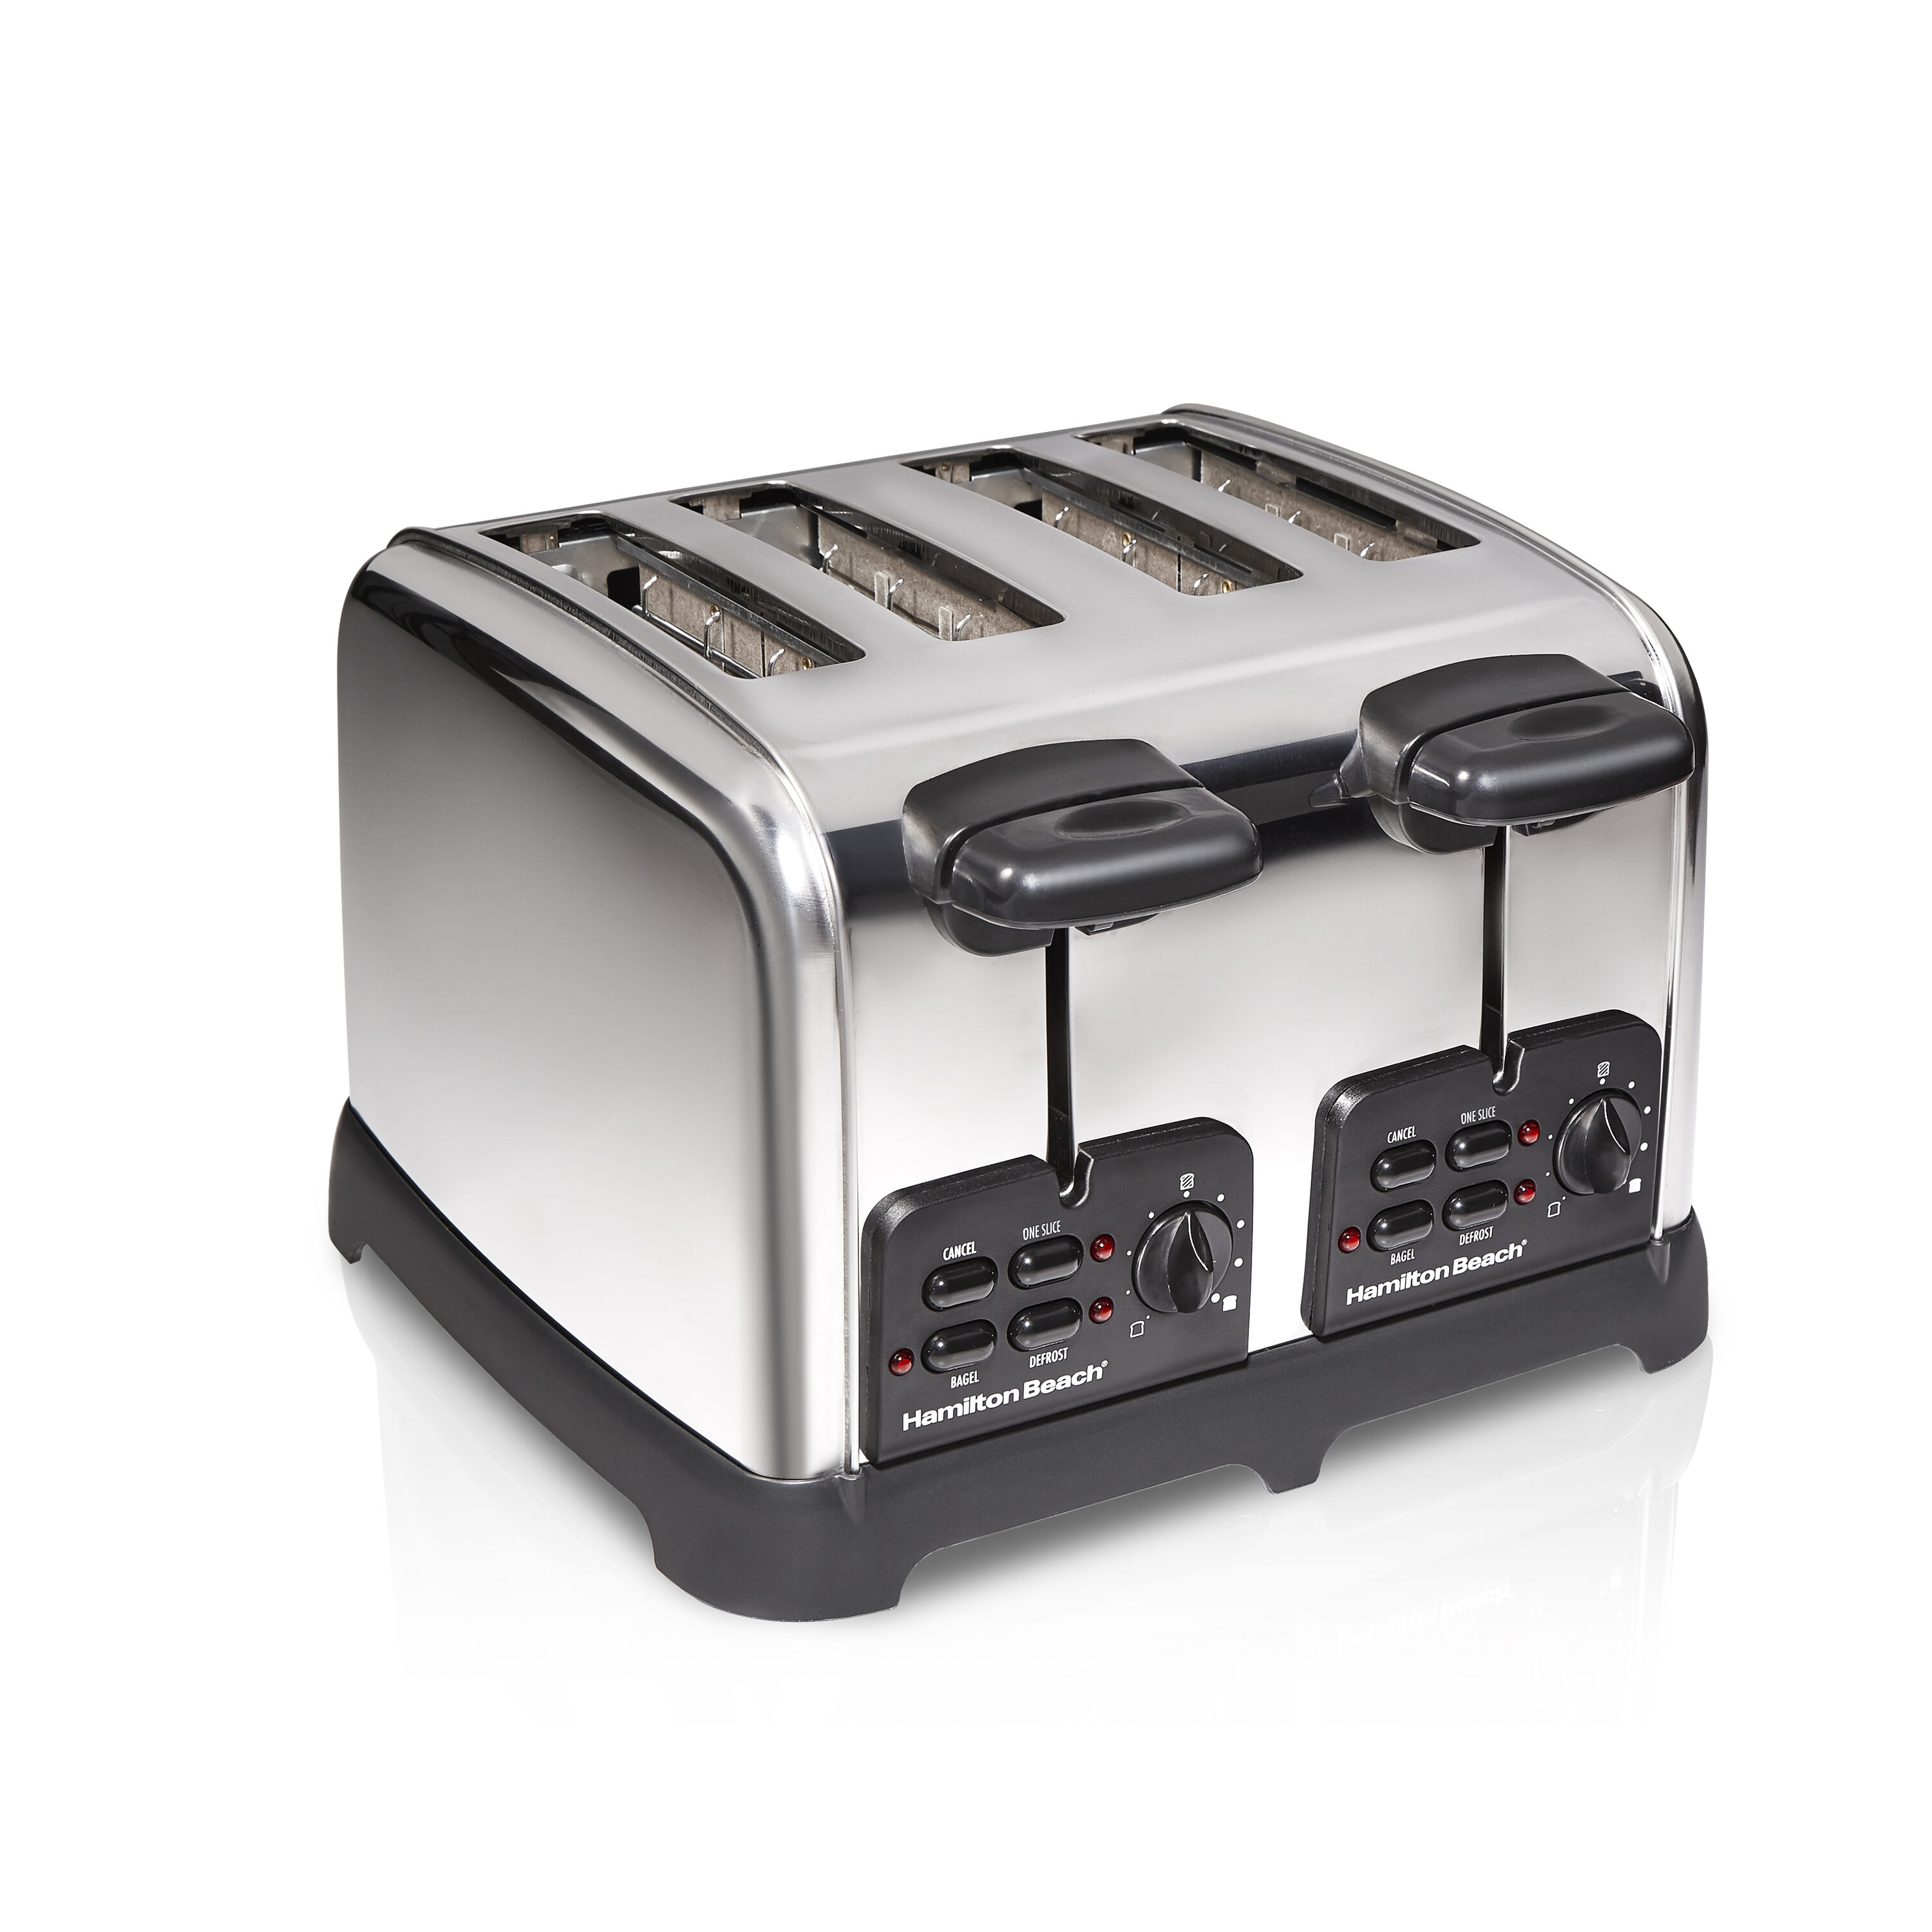 Highland Toaster 2-Slice Stainless Steel 800-Watt Toaster